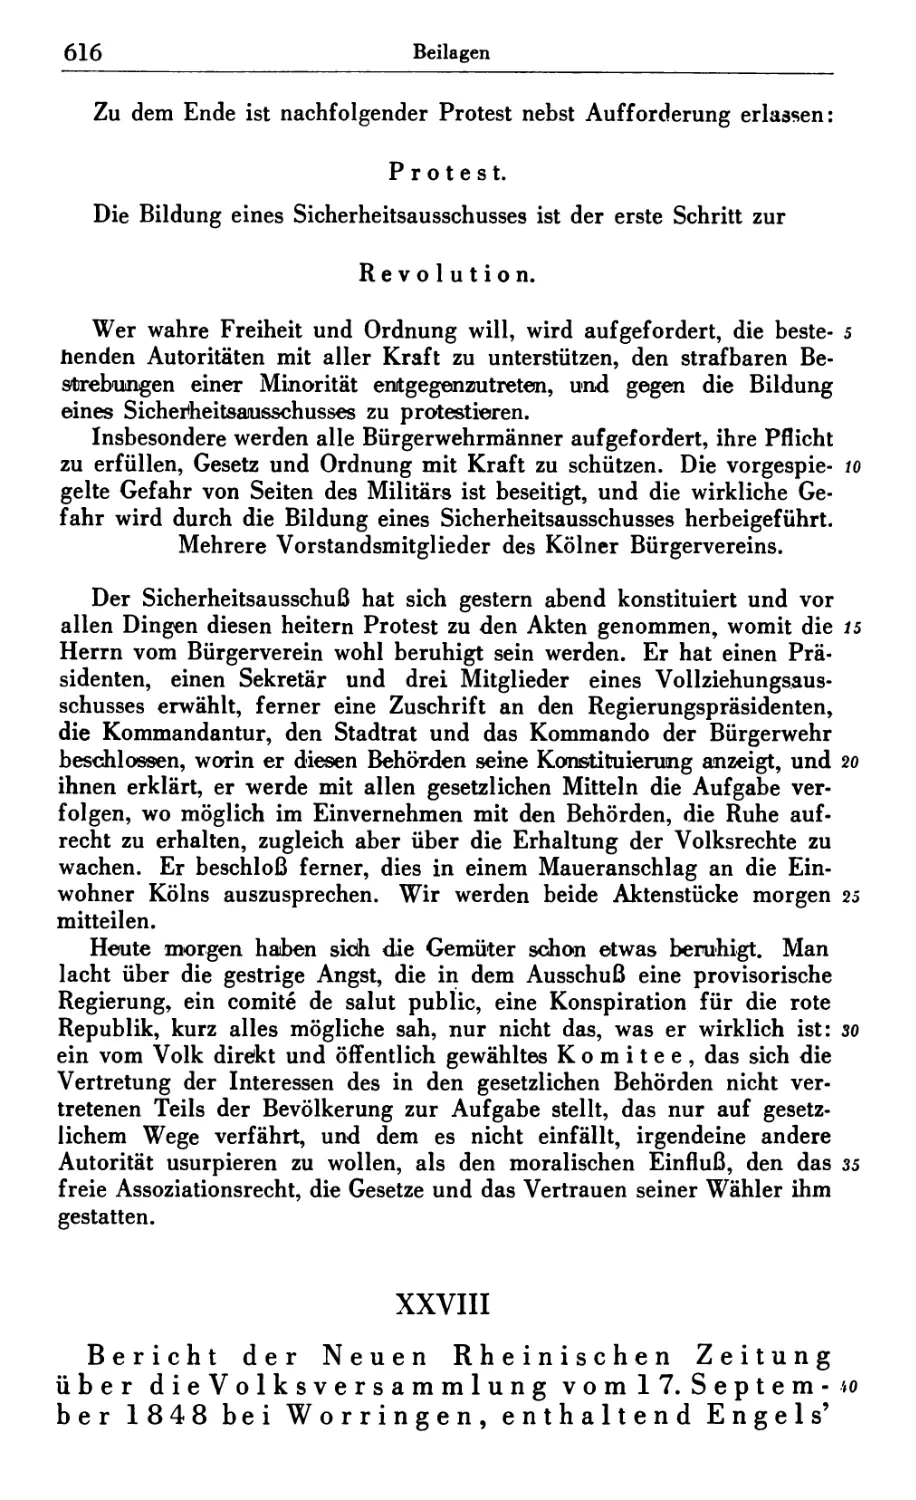 XXVIII. Bericht der Neuen Rheinischen Zeitung über die Volksversammlung vom 17. Septemiber 1848 bei Worringen, enthaltend Engels’ Adresse an die Frankfurter Nationalversammlung